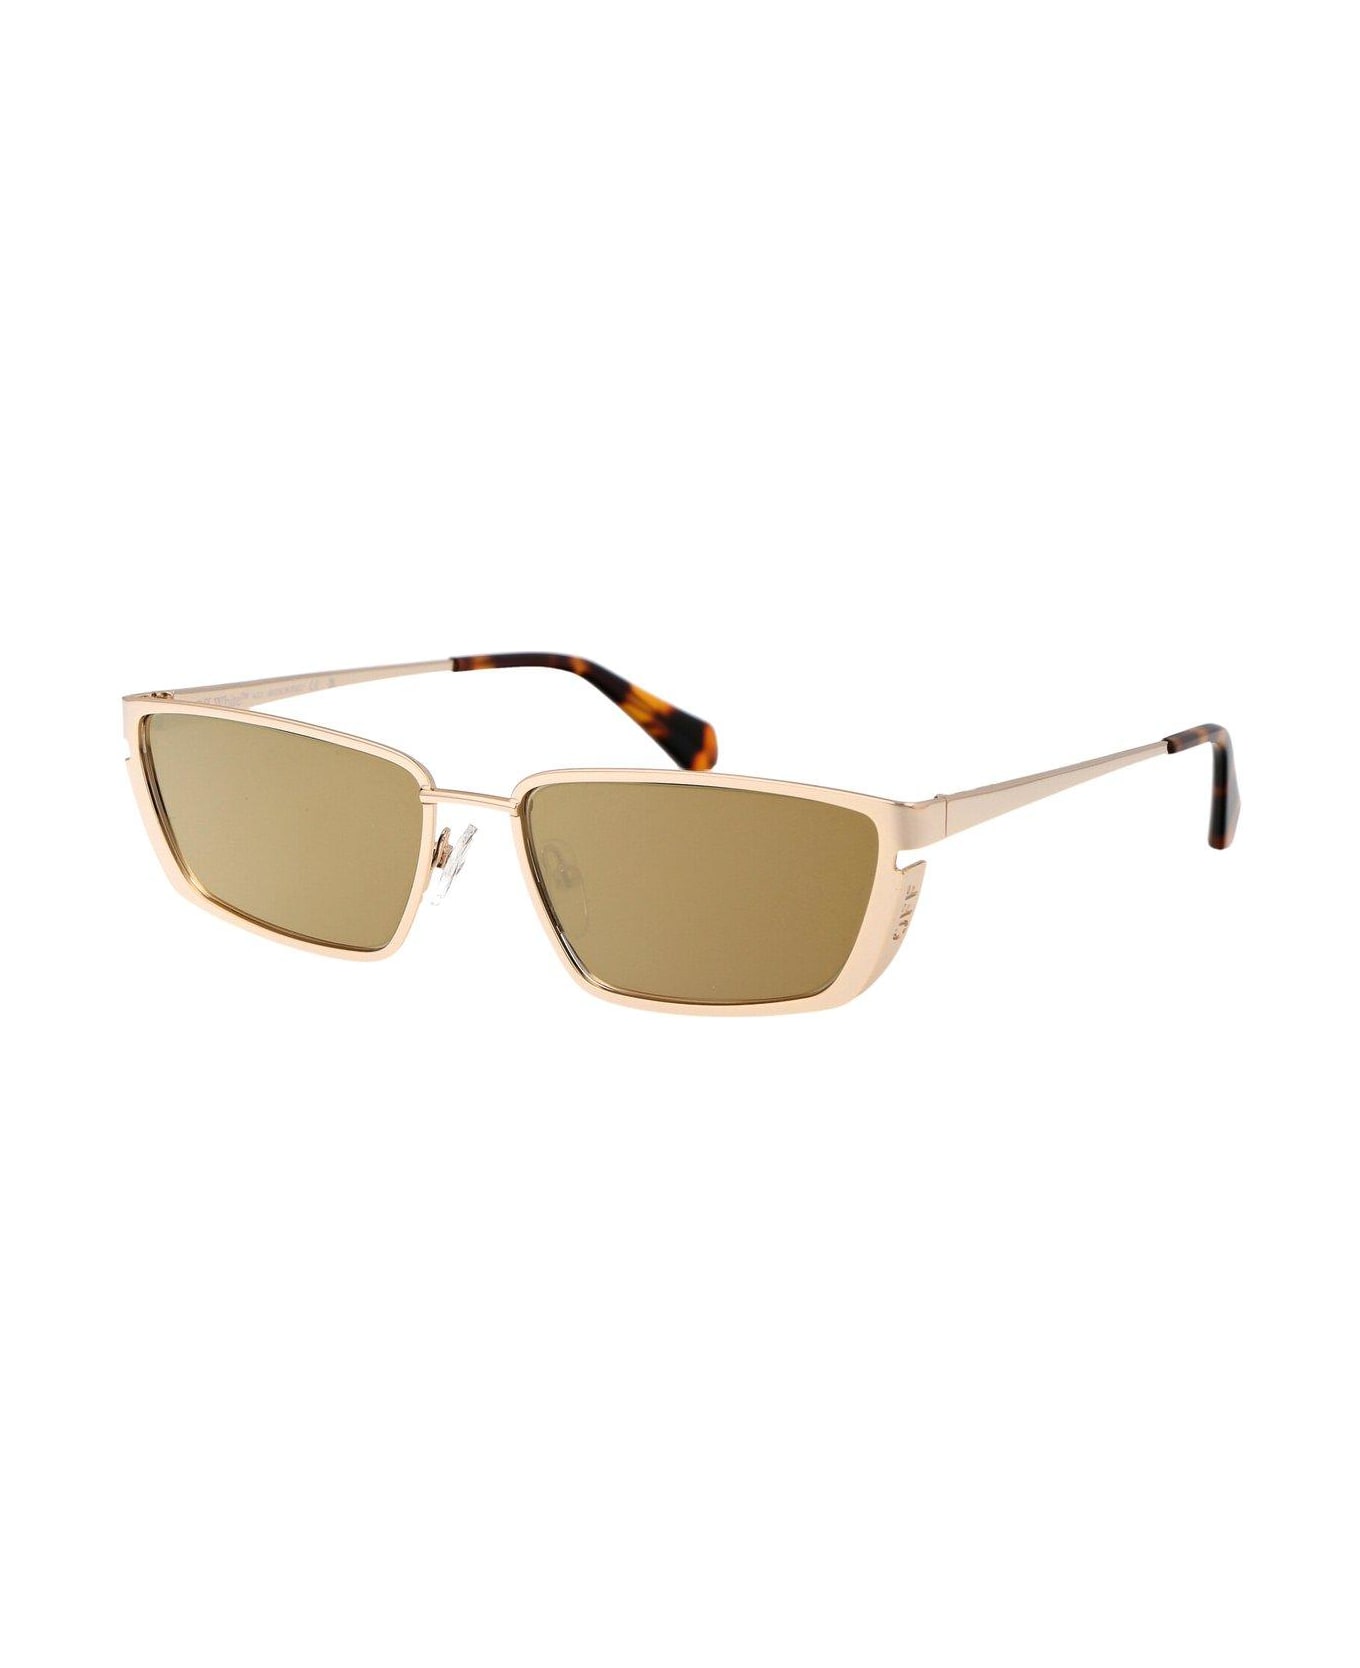 Off-White Richfield Sunglasses - 7676 GOLD GOLD